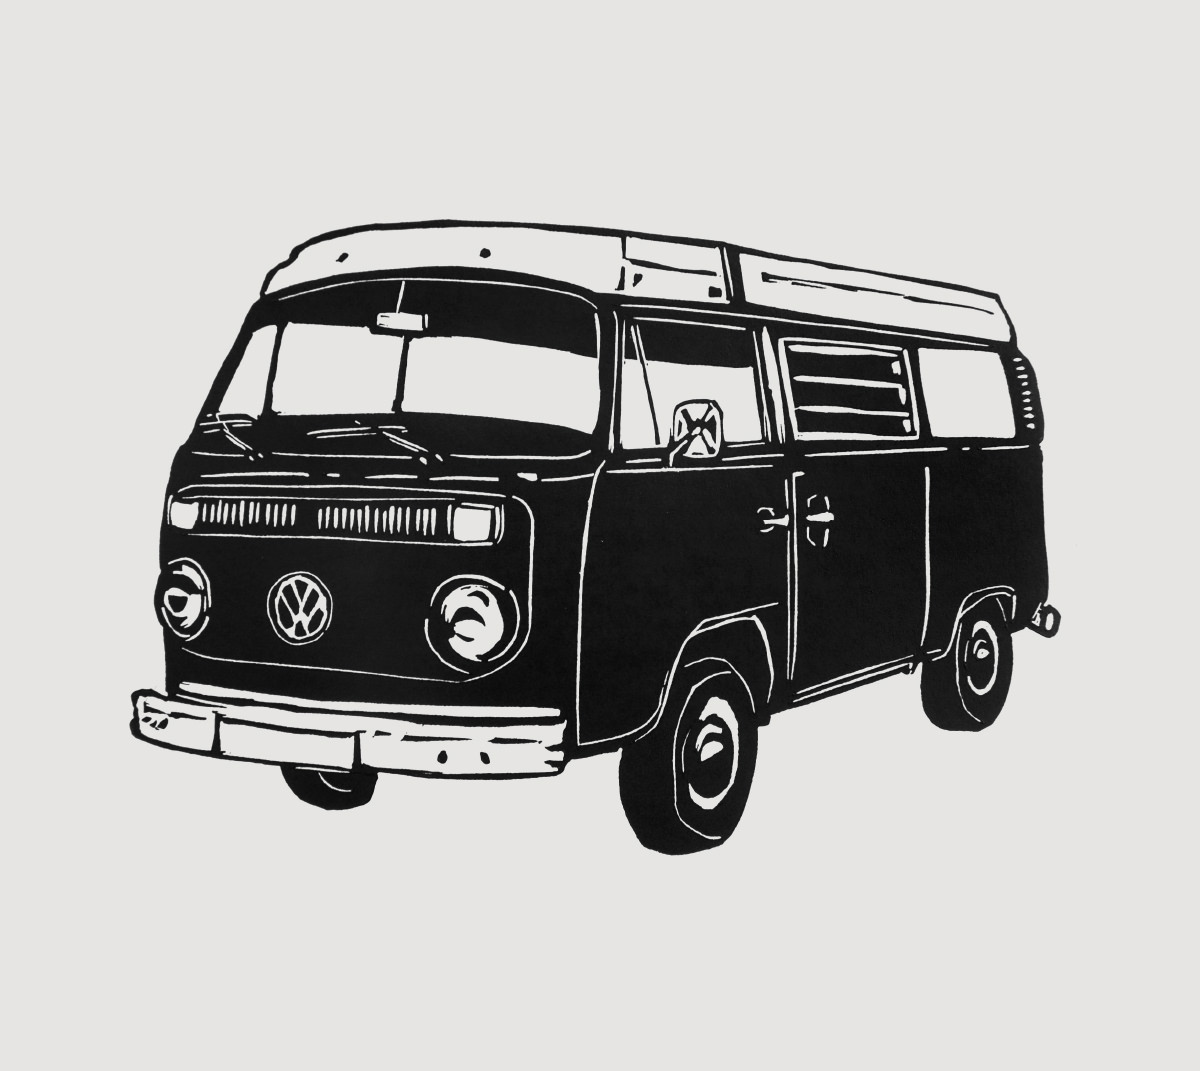 VW Campervan linocut print